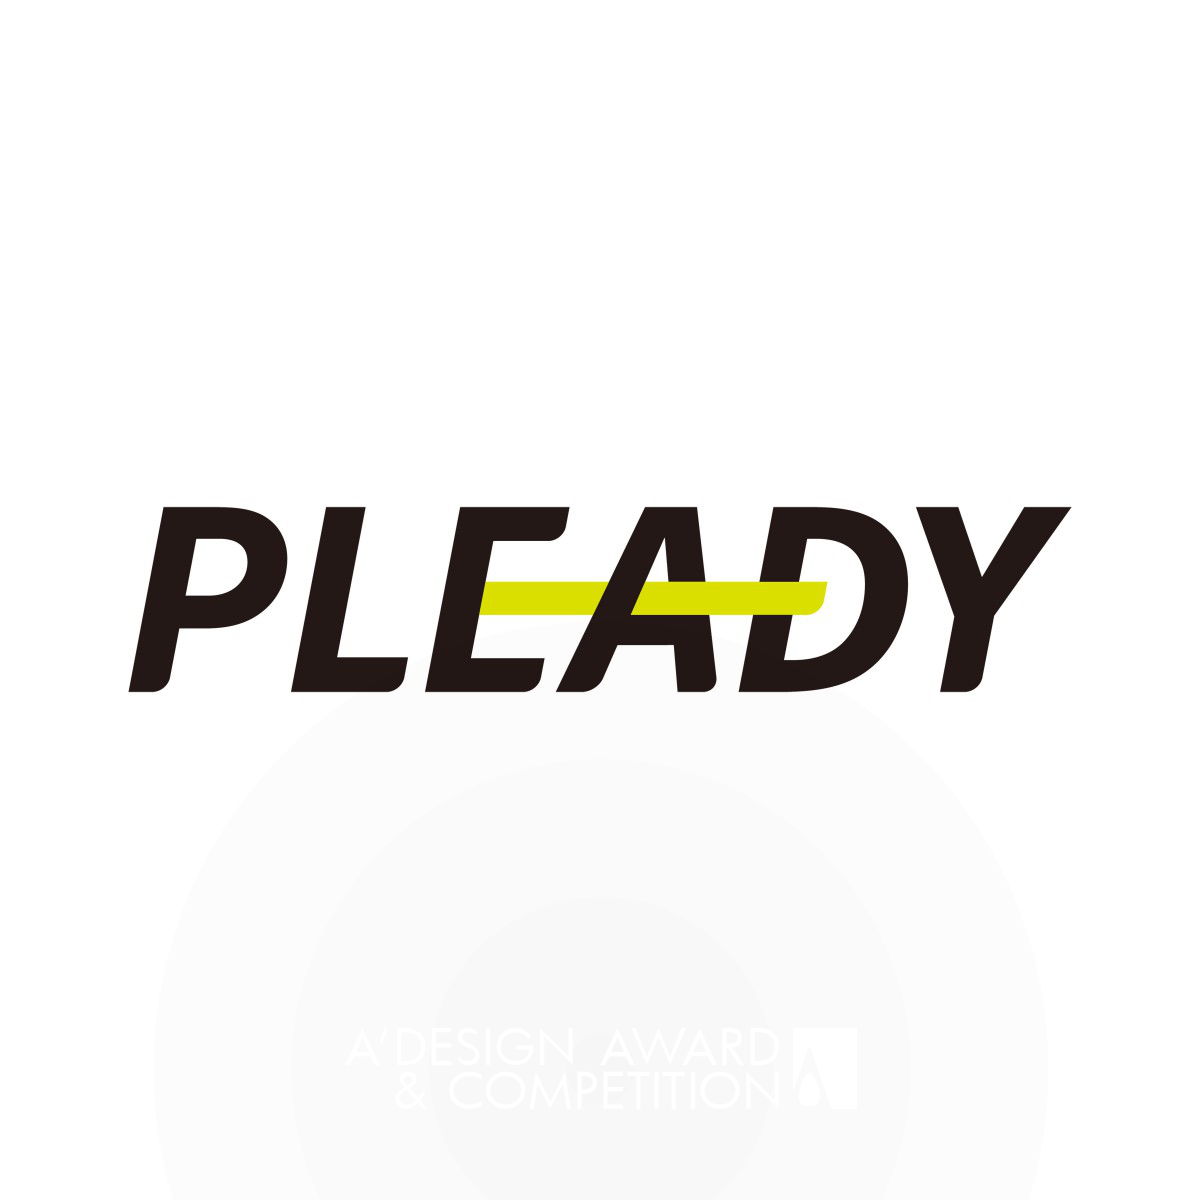 Pleady